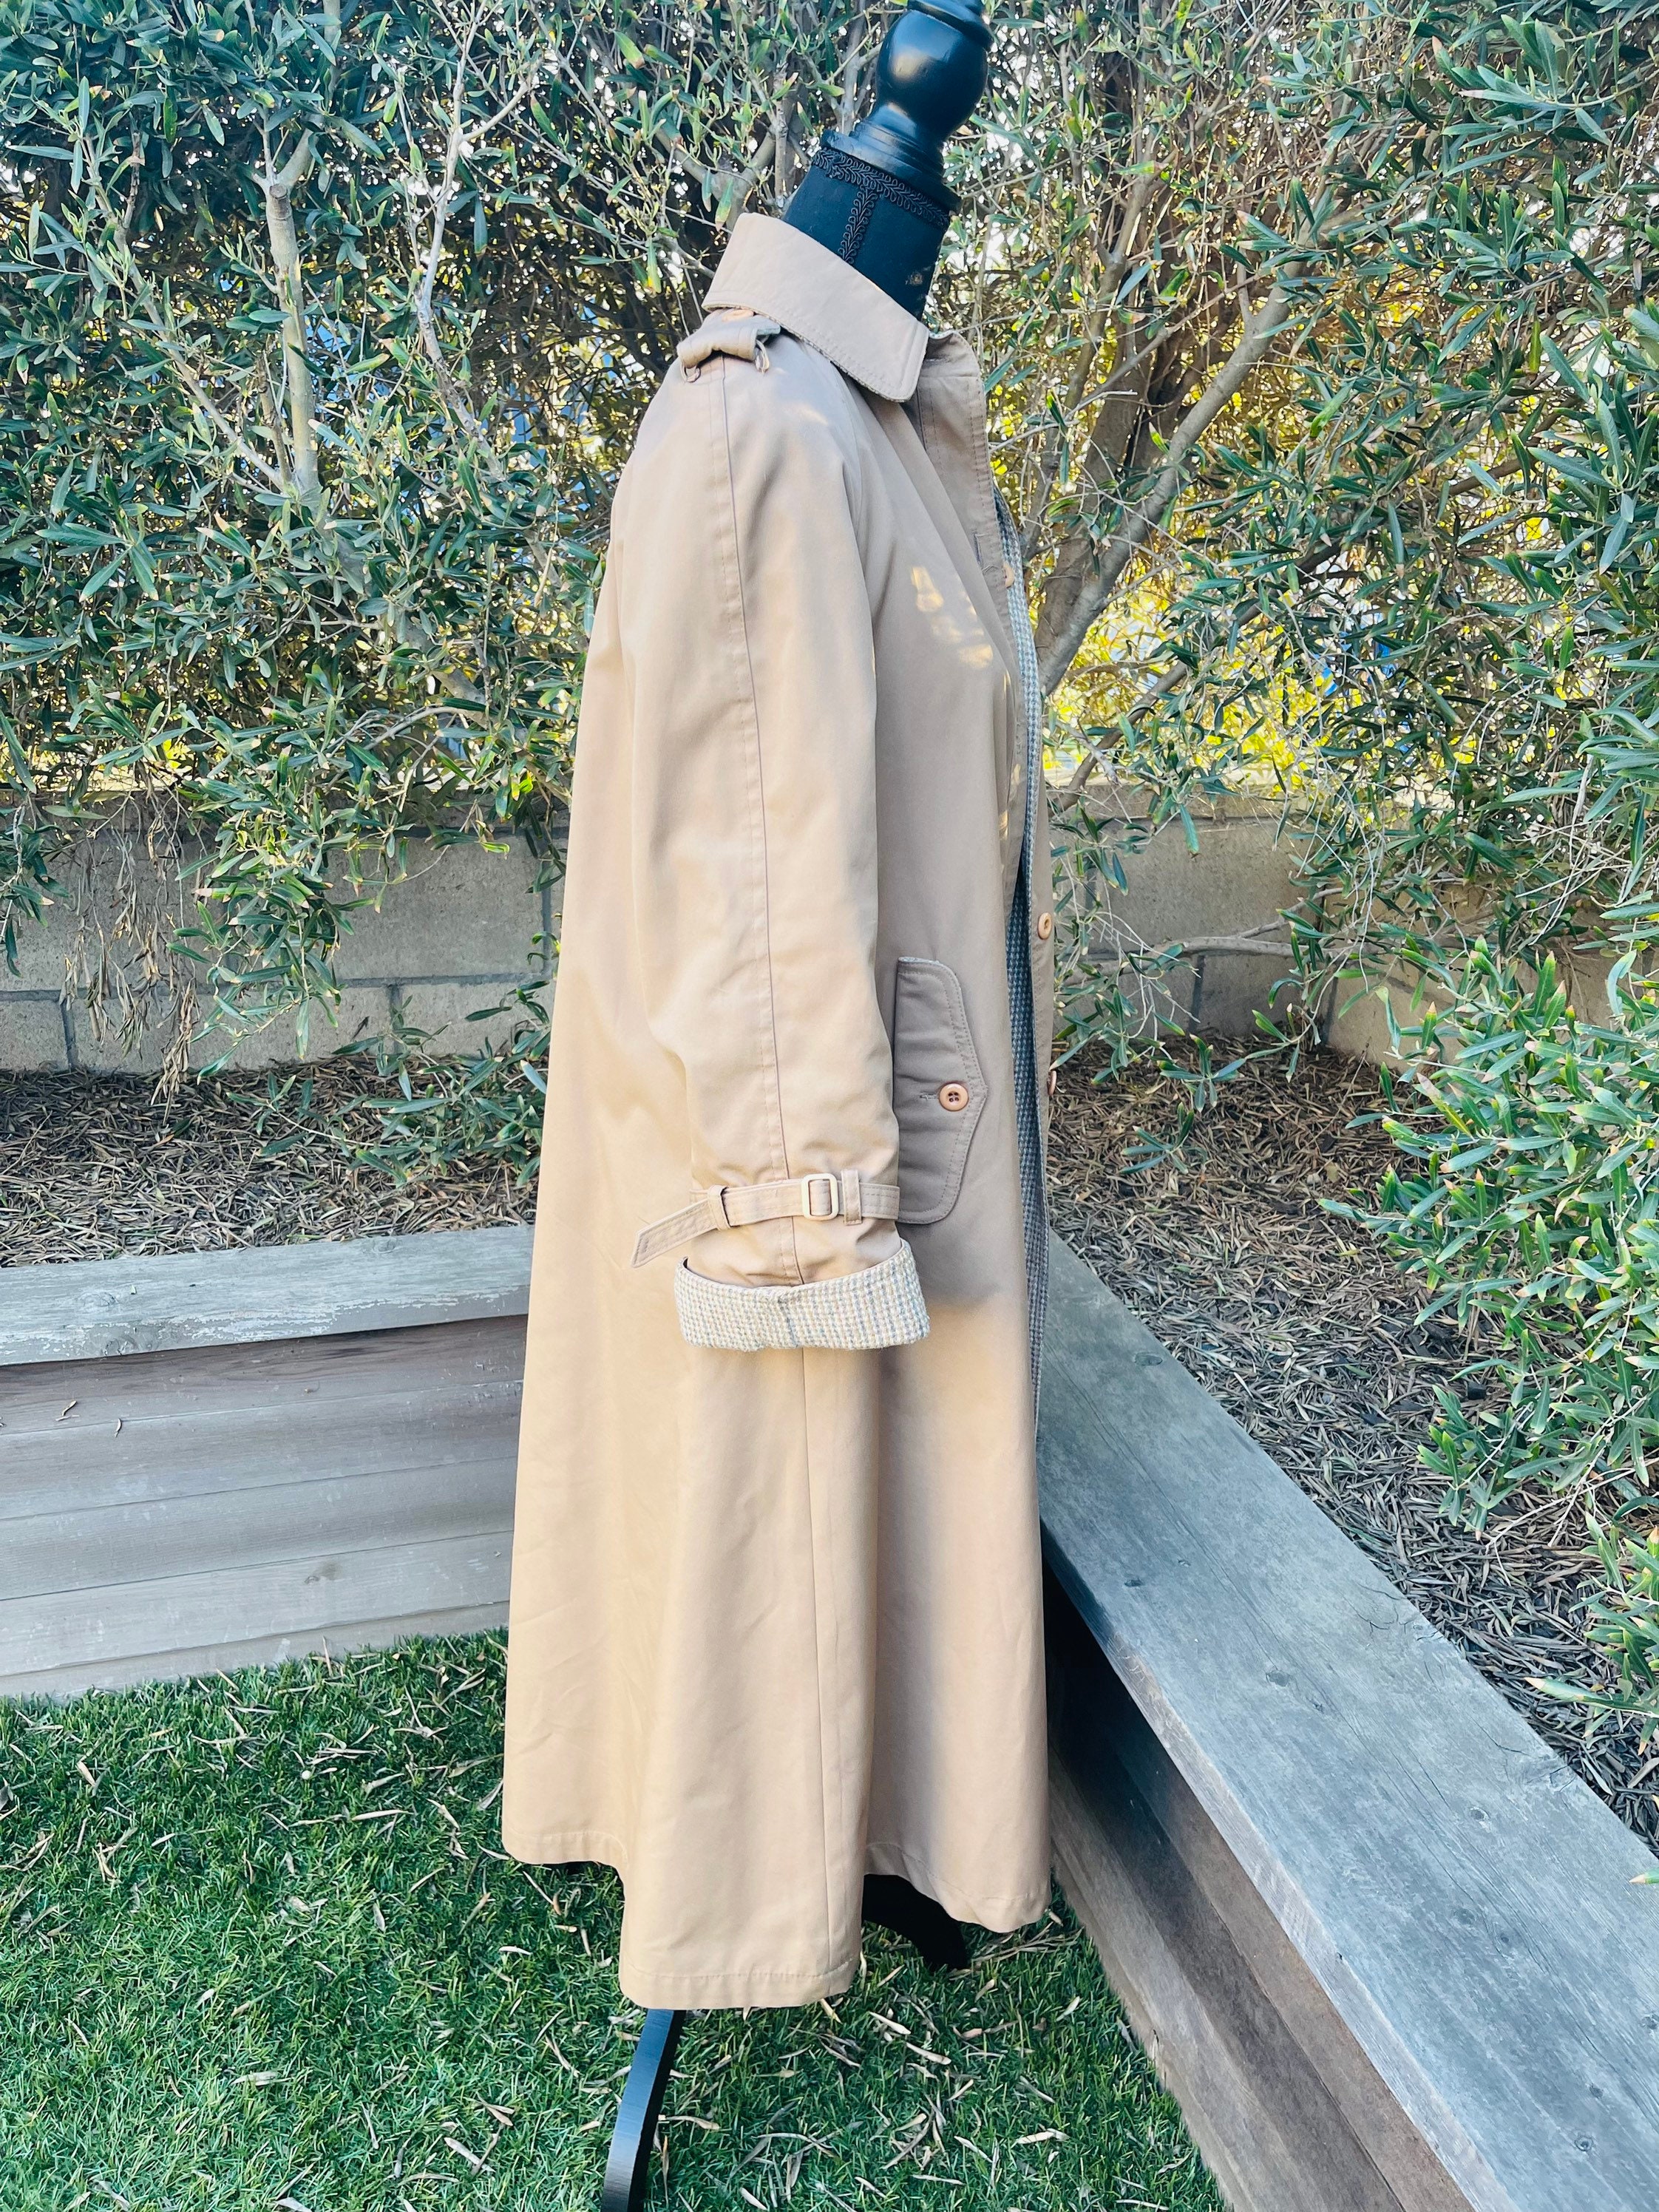 VegavintageFinds Vintage Reversible Trench Coat/ Raincoat